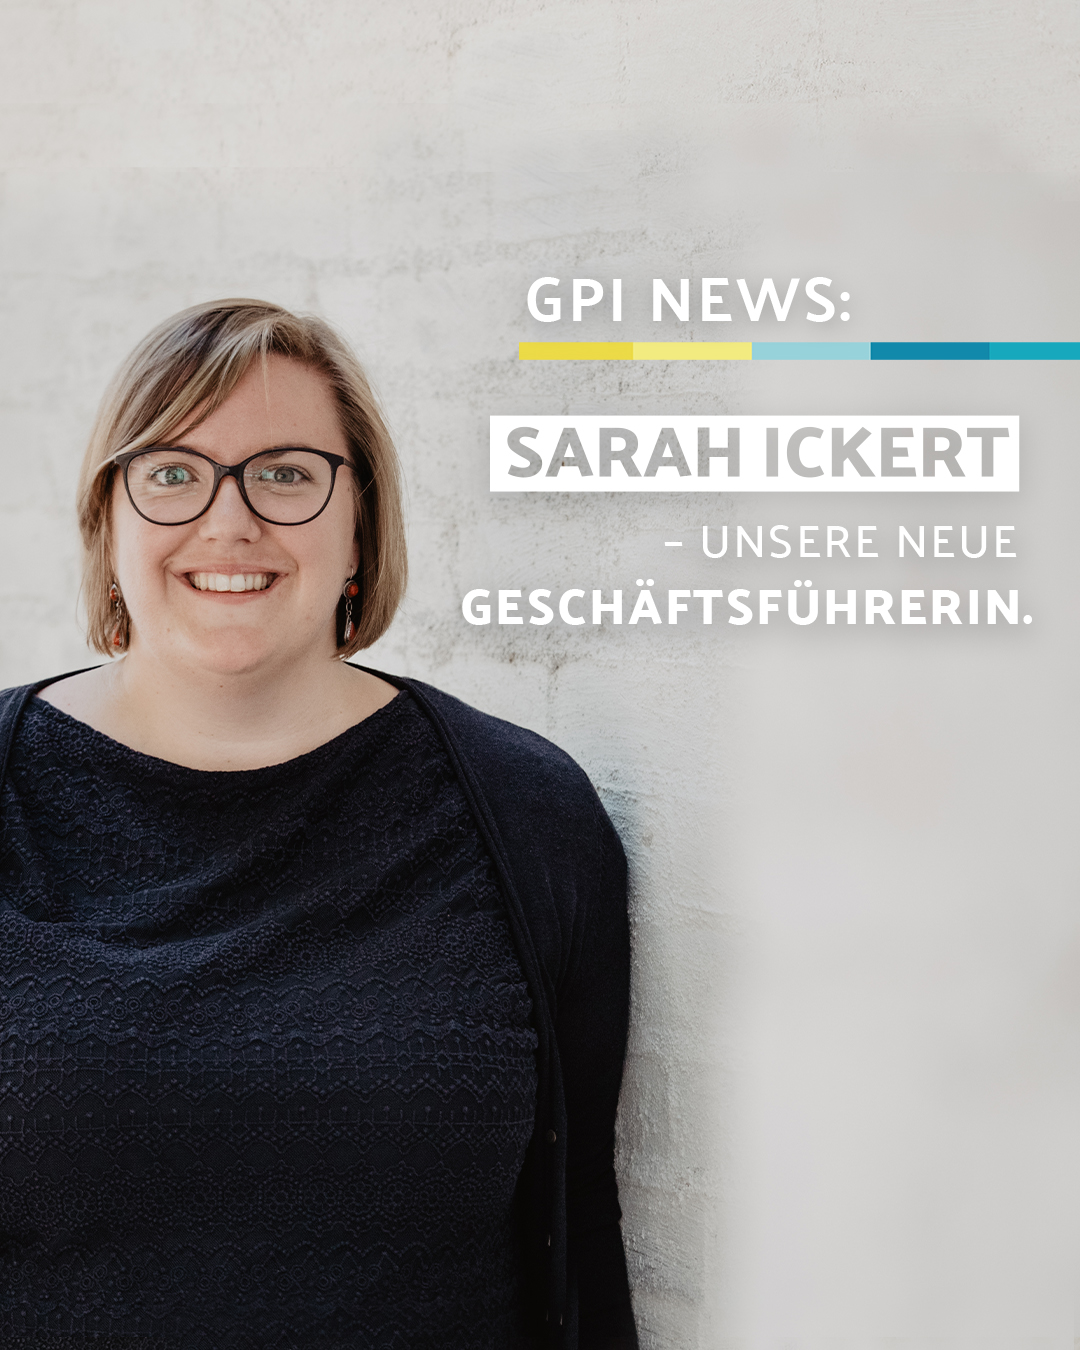 Sarah Ickert - neue Geschäftsführerin der GPI Consulting